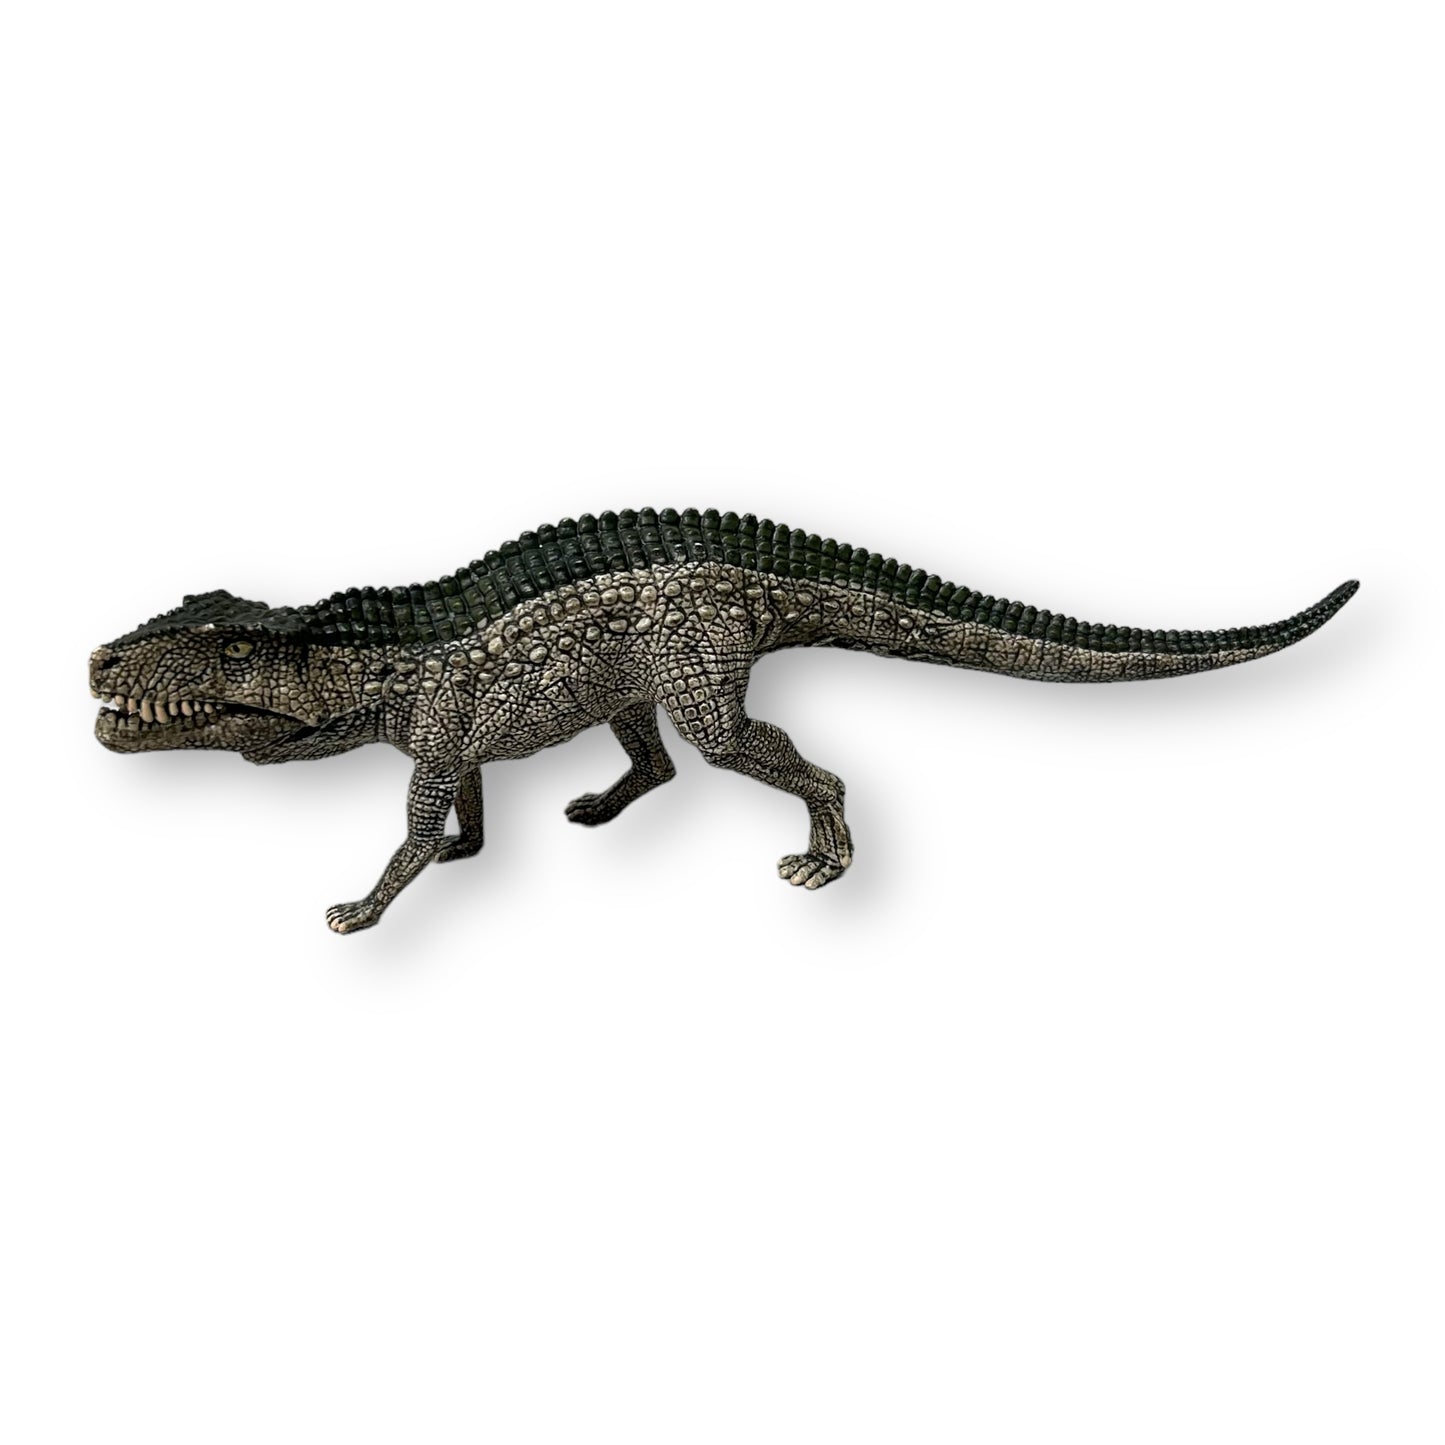 Schleich 15018 Postosuchus Dinosaur, 7.5"